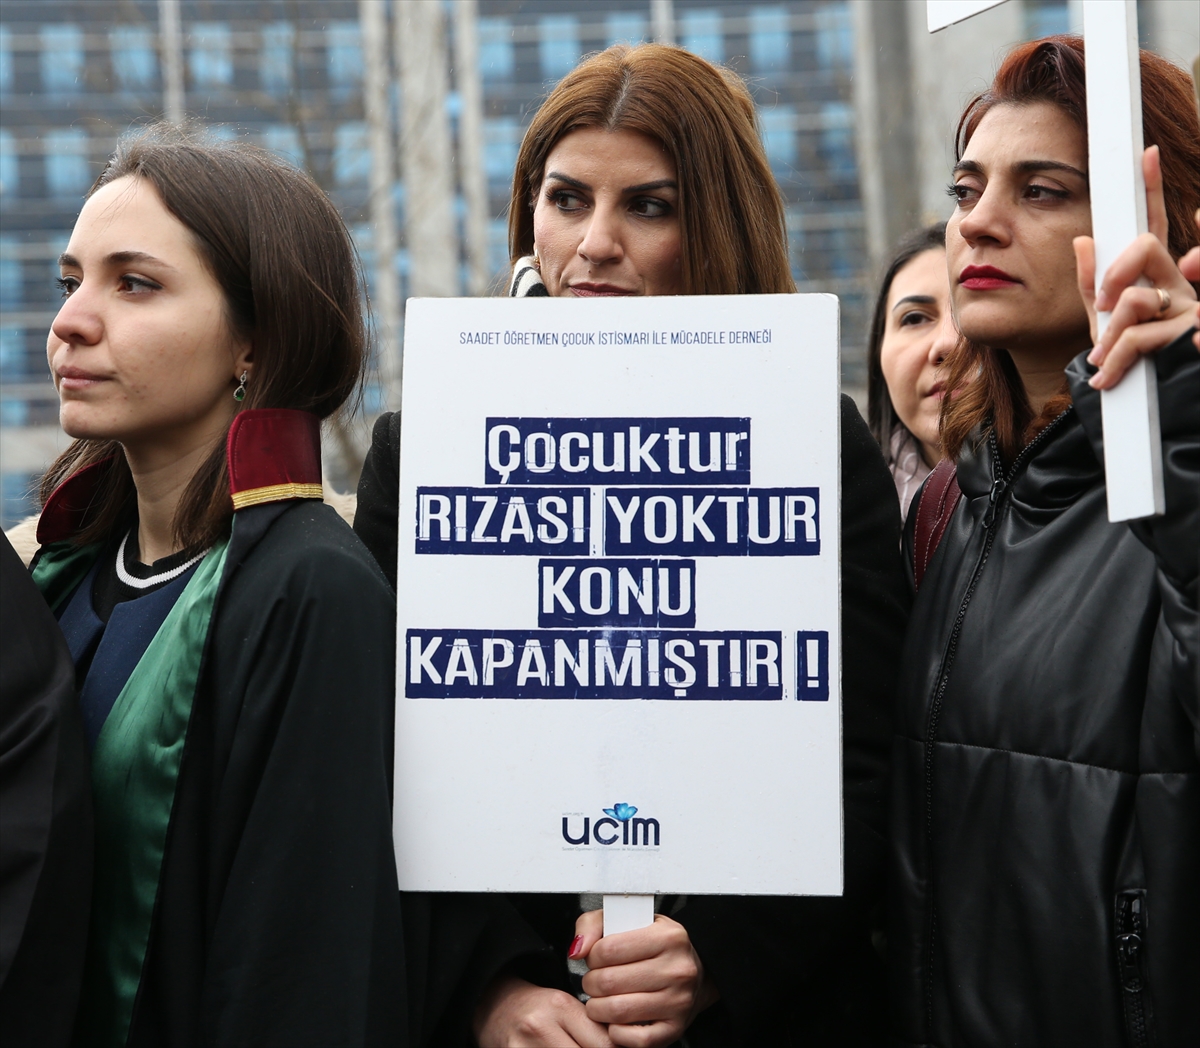 GÜNCELLEME – İstanbul'da küçük yaşta çocuğun cinsel istismarı davası başladı